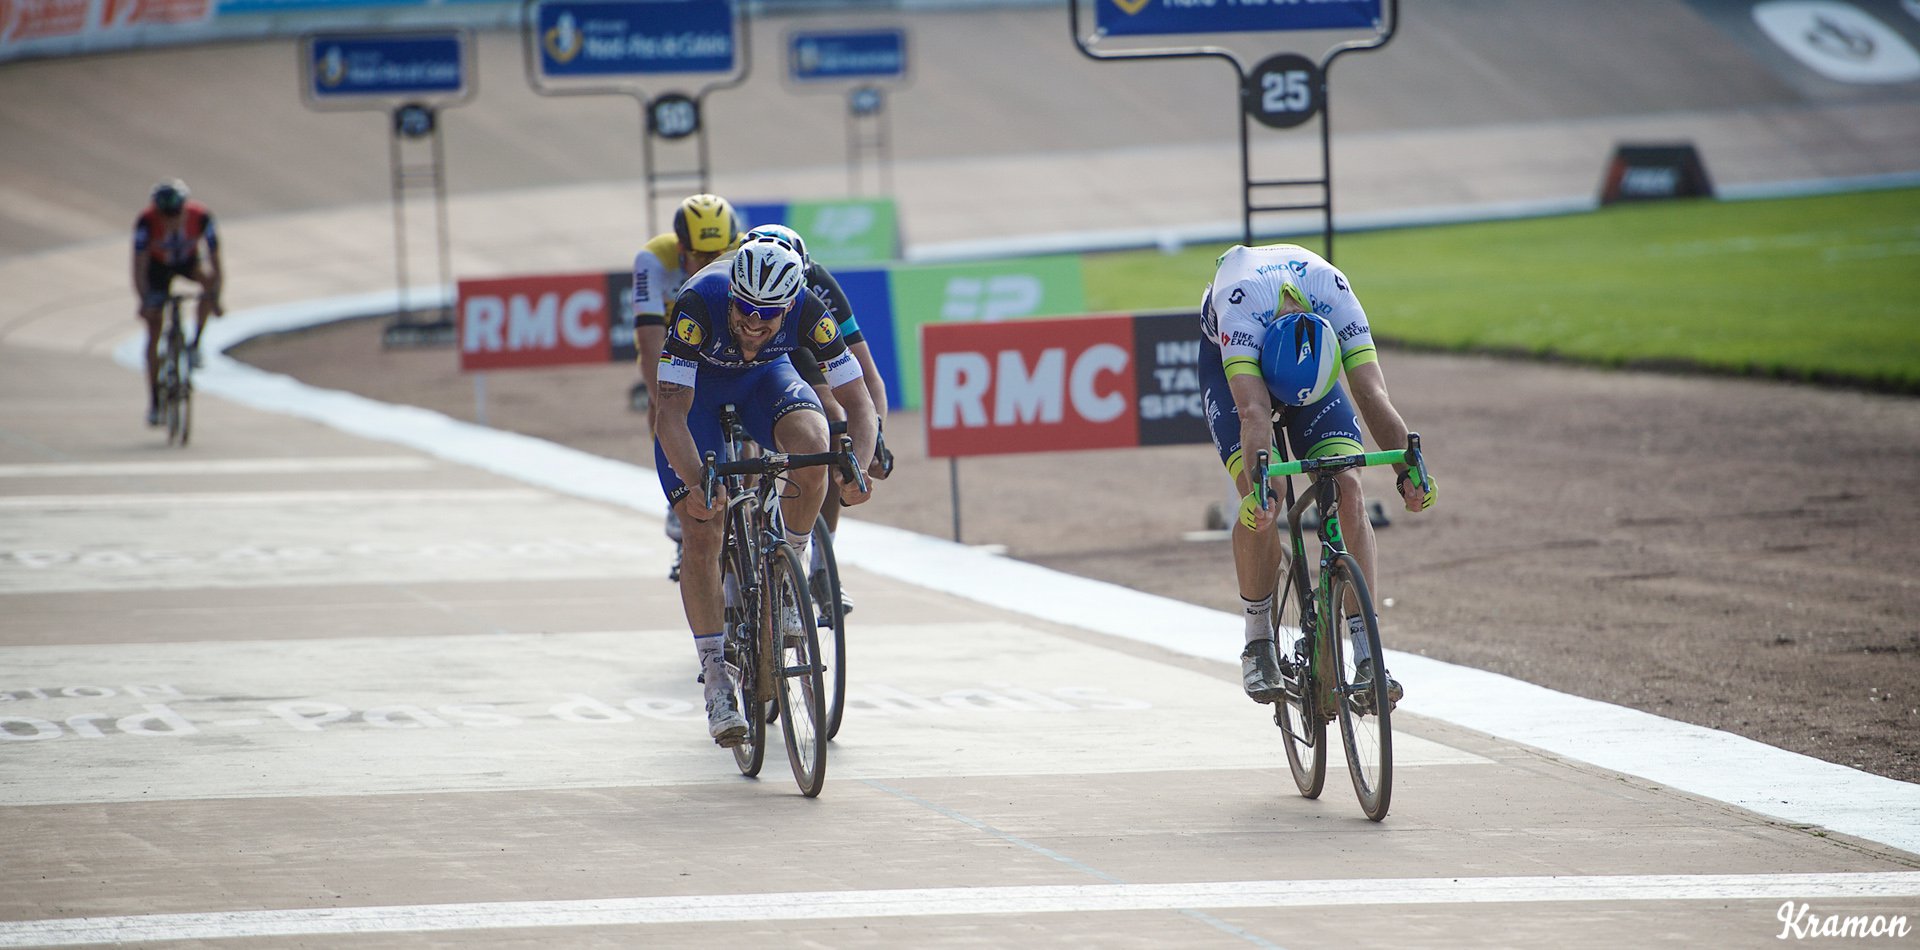 Por centímetros. Hayman lograba la victoria de su vía ante un Boonen que se quedó a las puertas de proclamarse campeón de la Paris-Roubaix por quinta vez. © Kramon